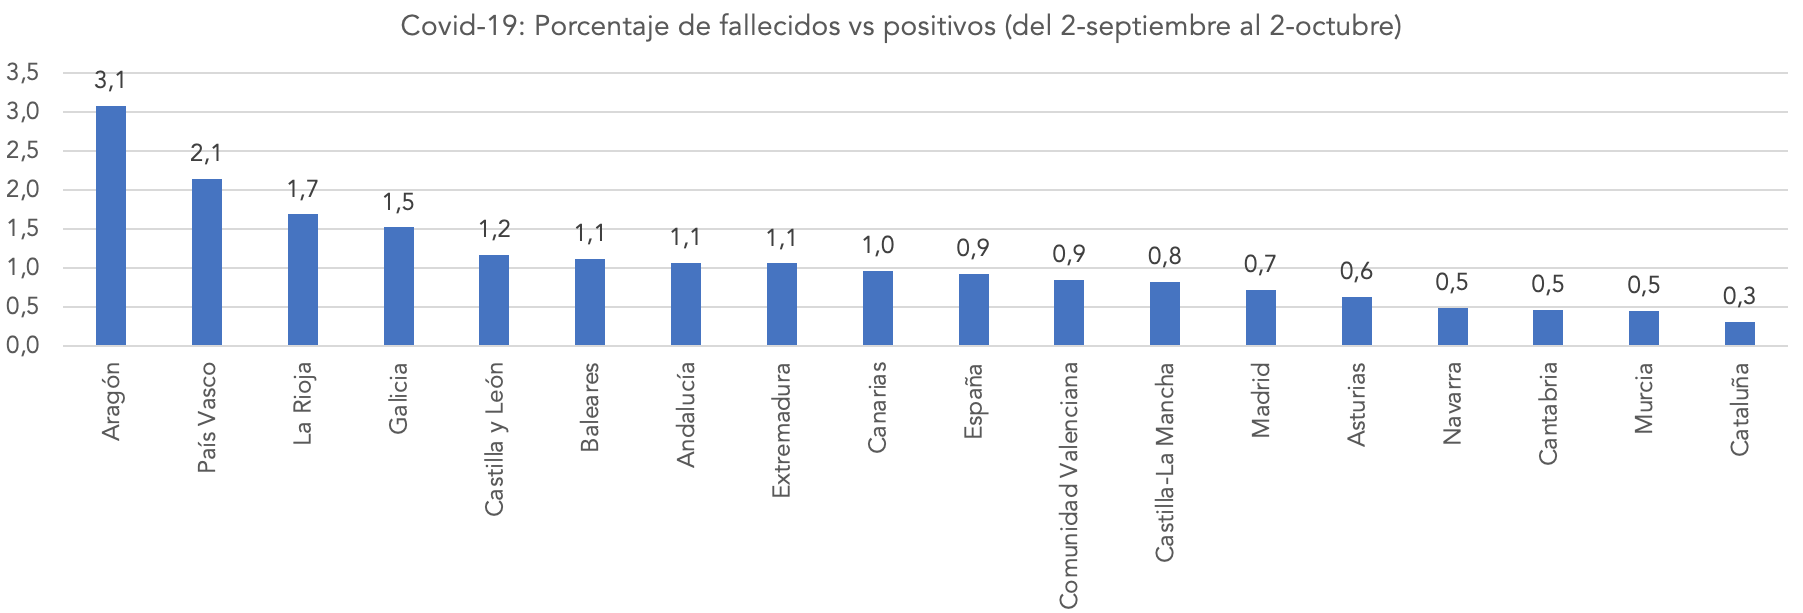 3-covid-19-porcentaje-fallecidos-vs-positivos-letalidad-ccaa-espana-segunda-ola.png